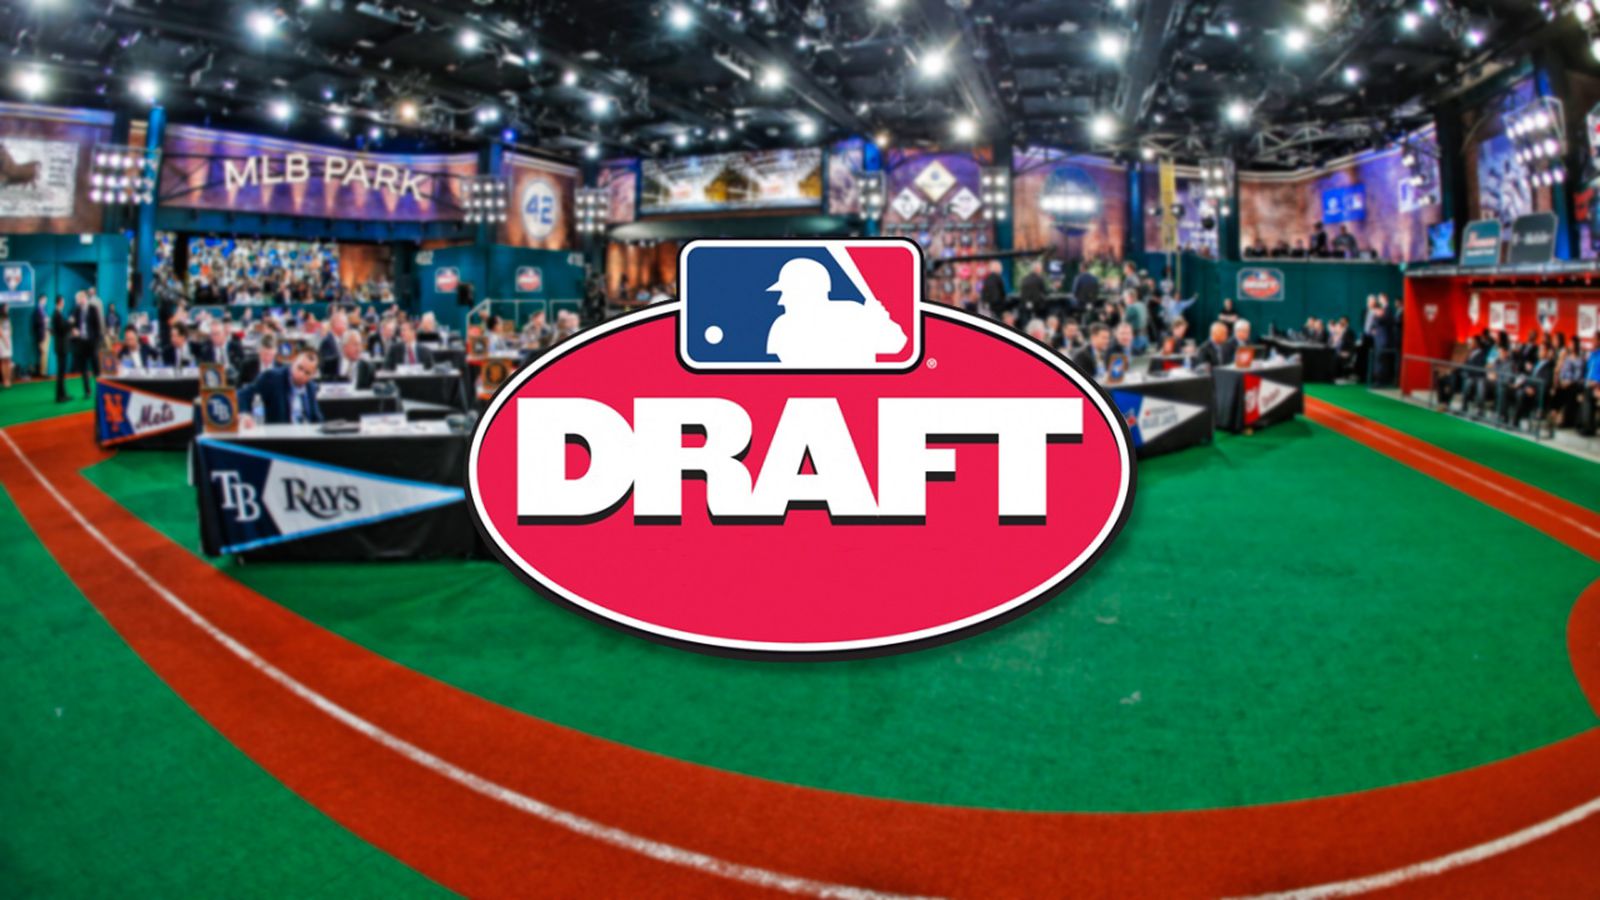 2019 apba baseball draft